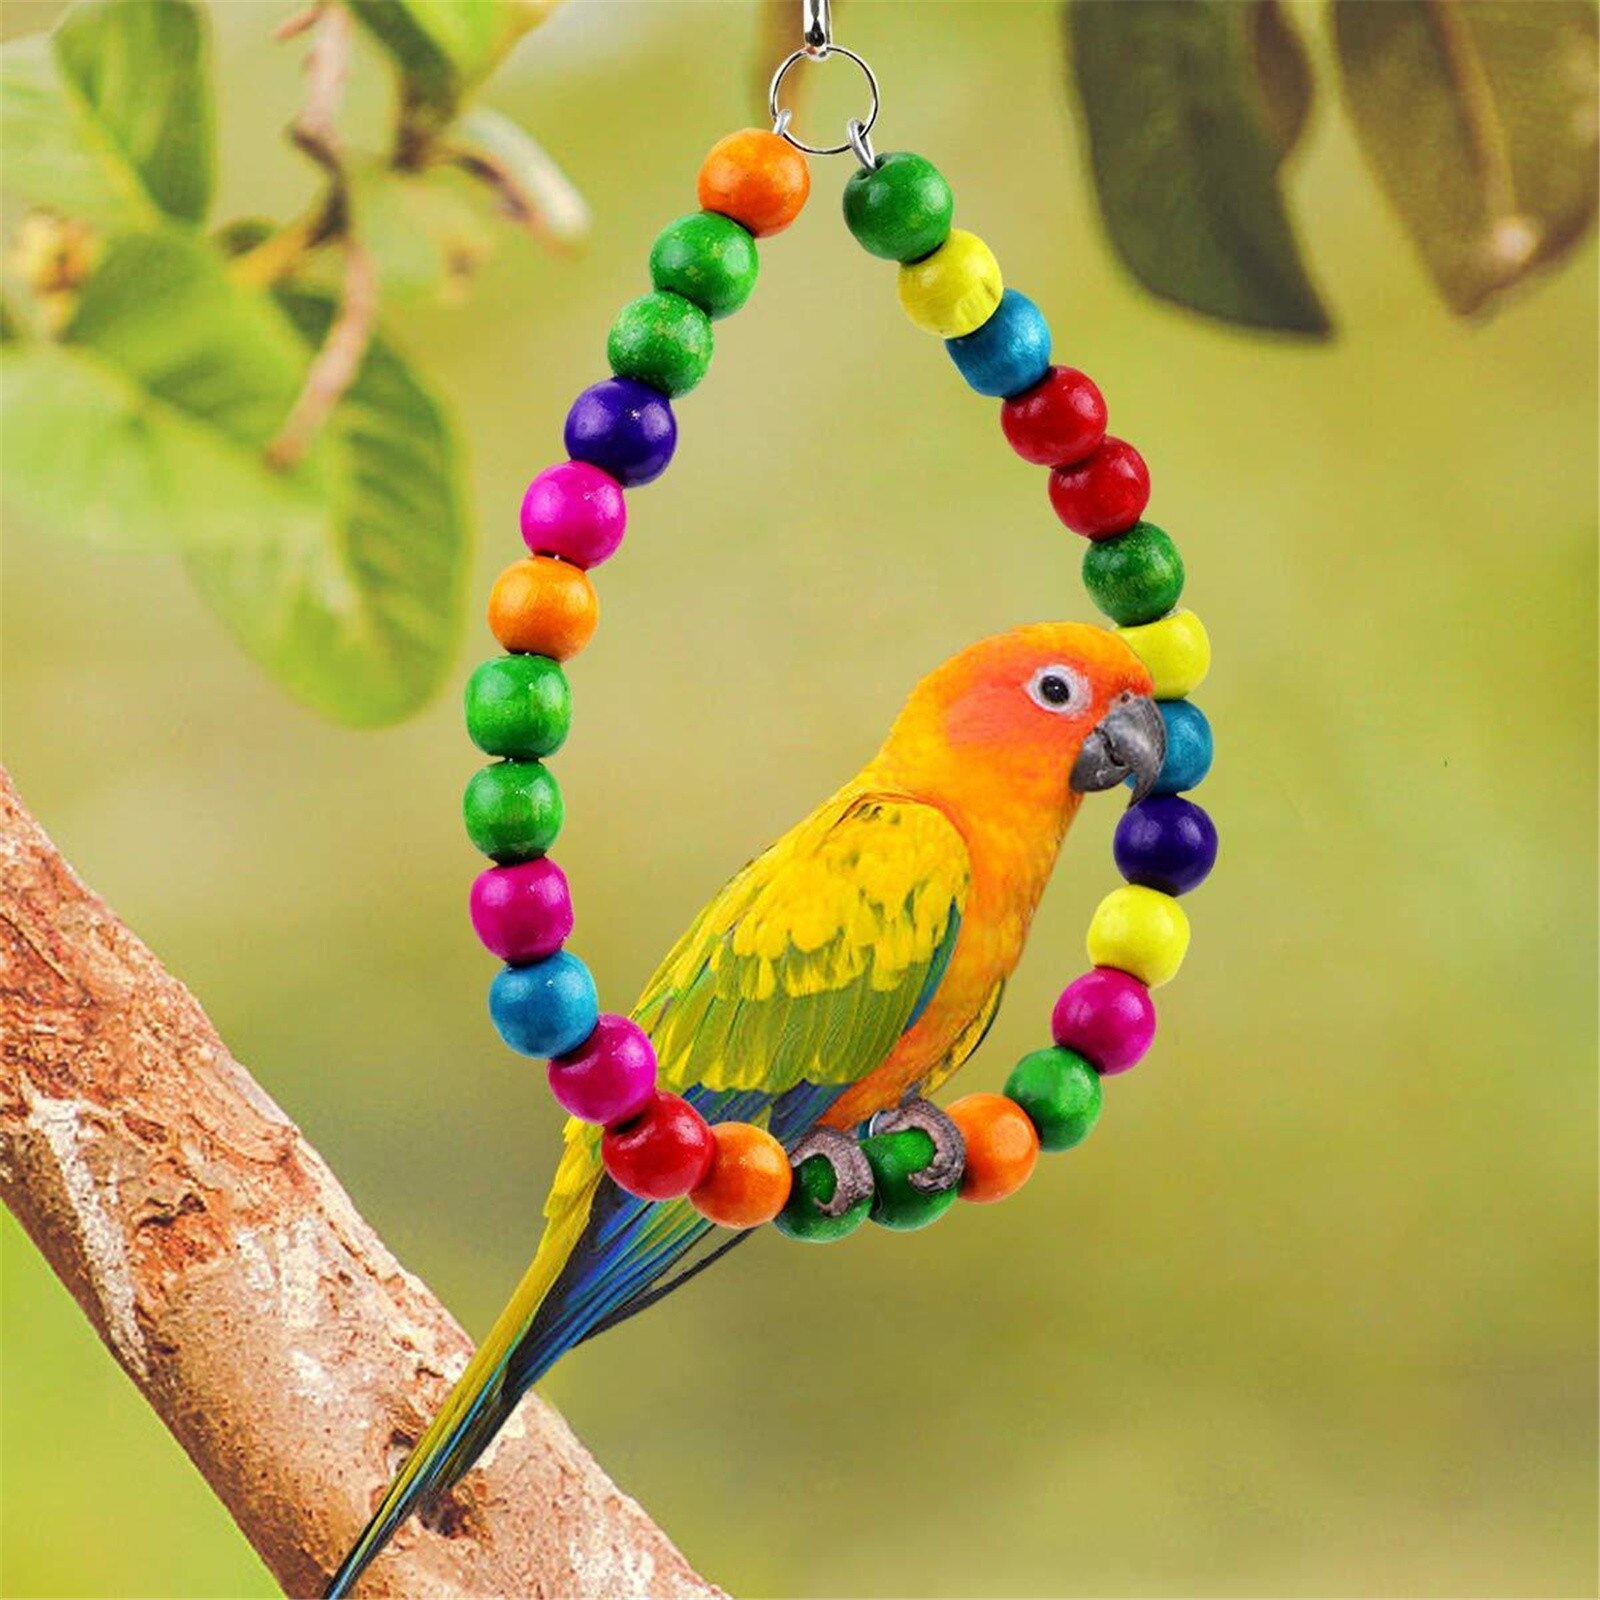 Papegaaien Speelgoed En Vogel Accessoires Voor Huisdier Speelgoed Swing Stand Budgie Parkiet Kooi Afrikaanse Grey Vogel Speelgoed Parkiet Kooi # t2g